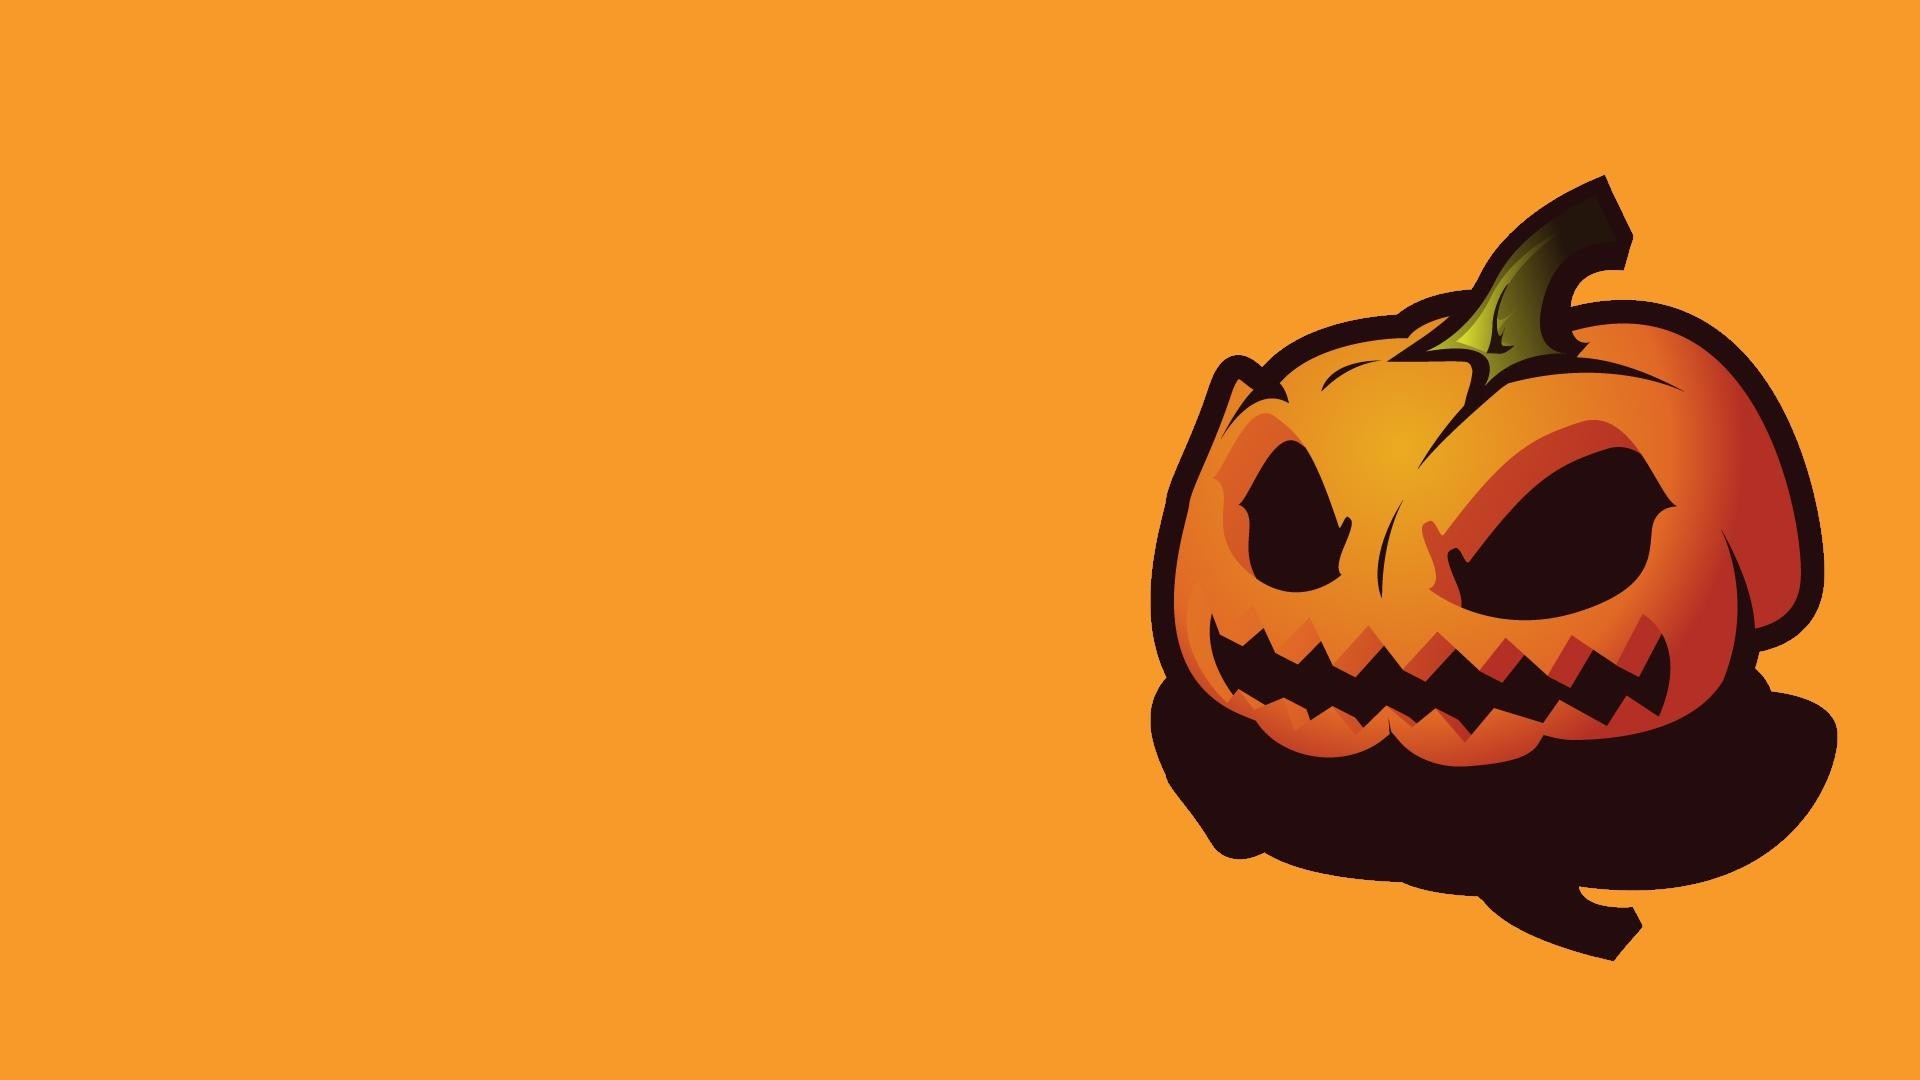 Cool Halloween Pumpkin Wallpaper